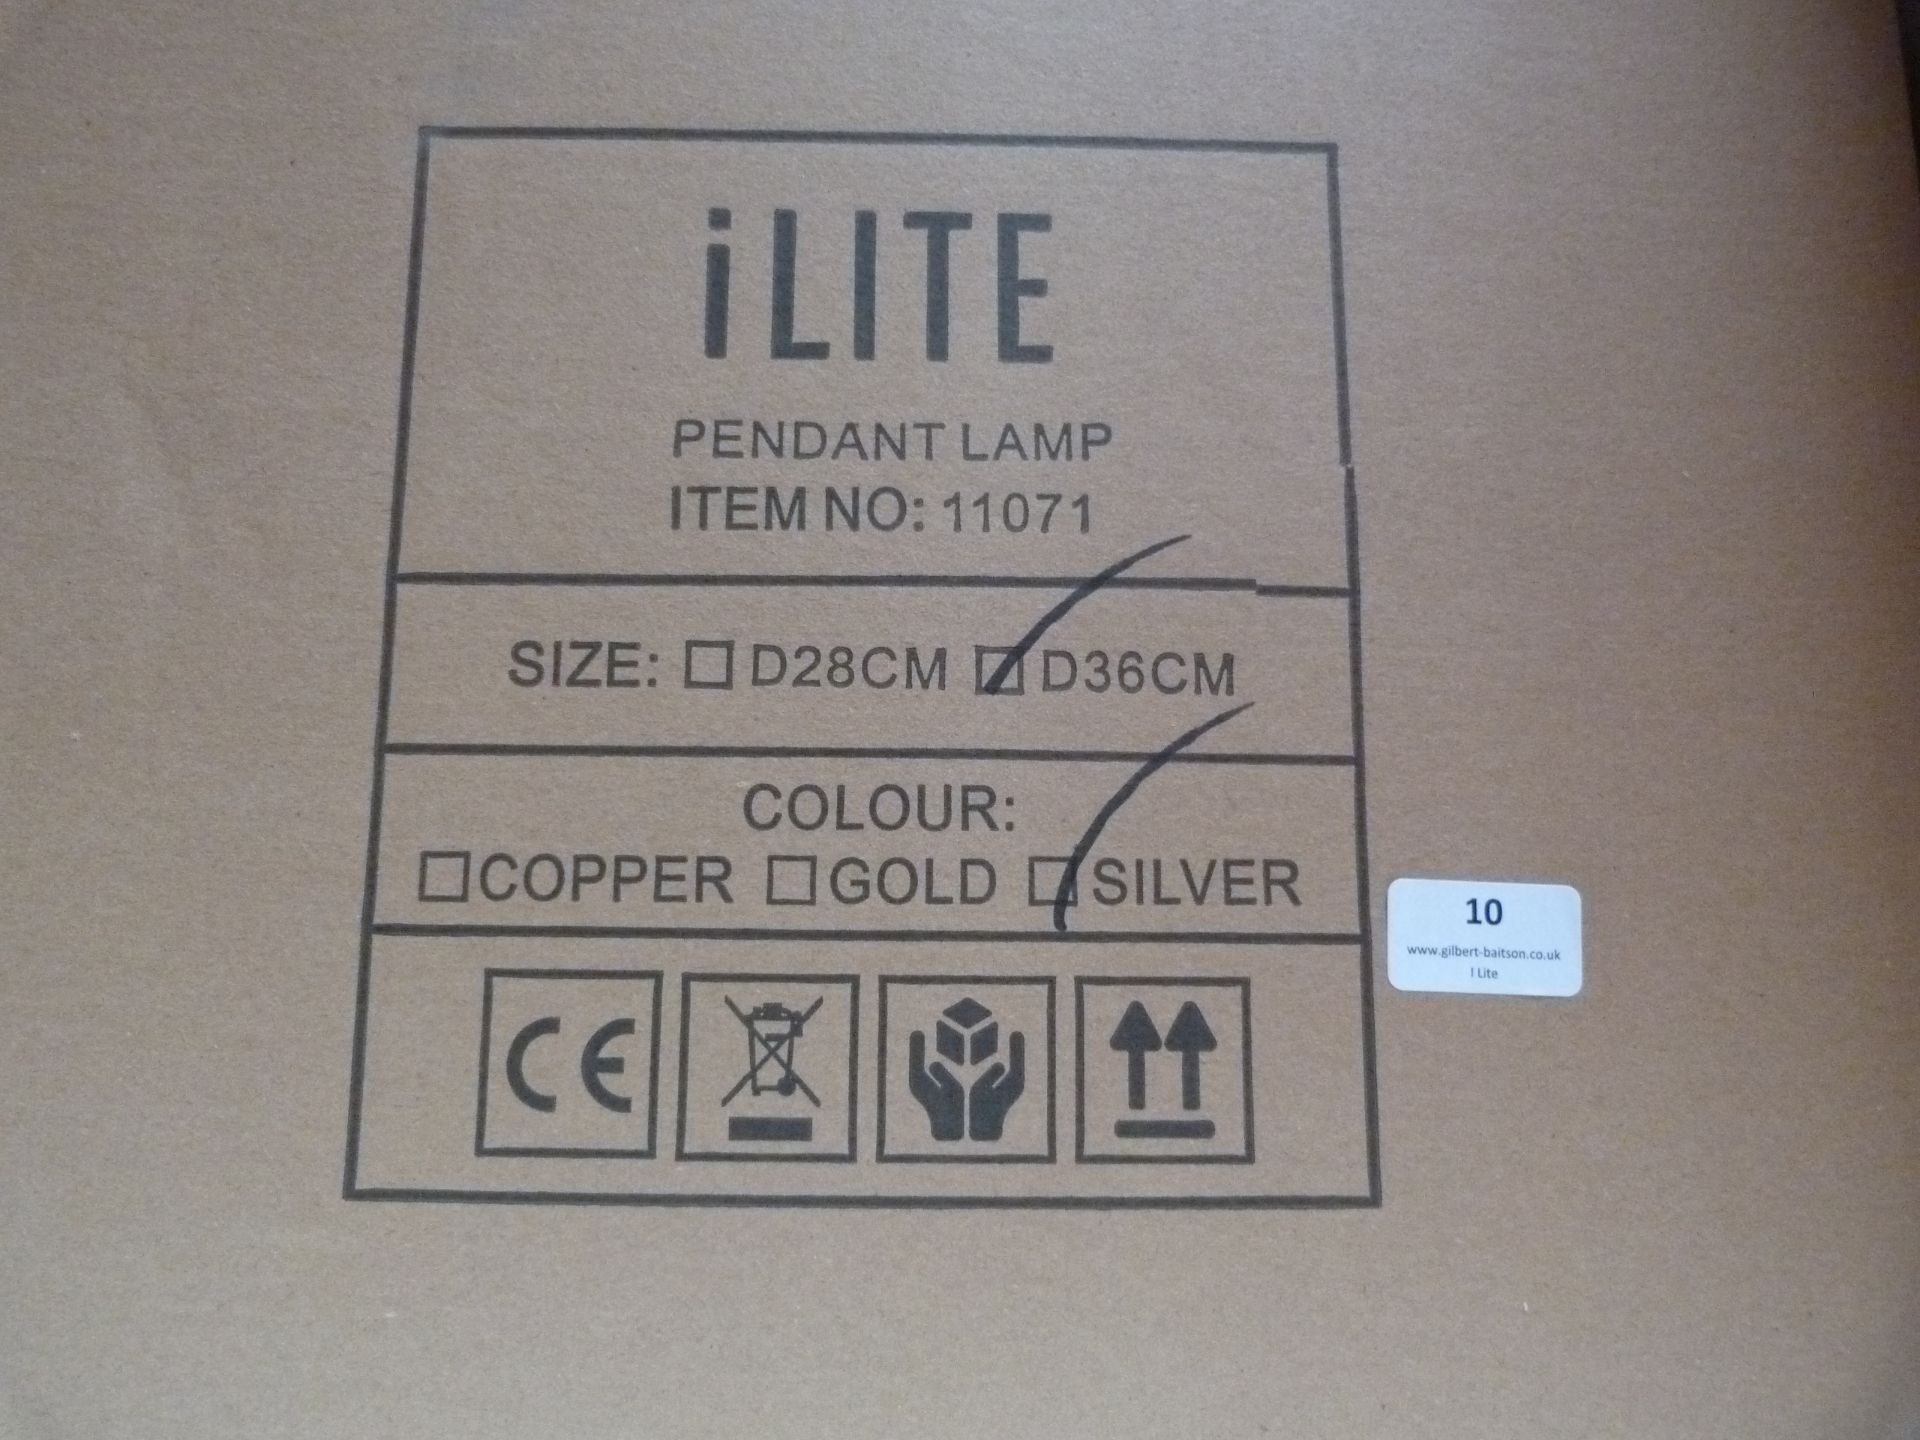 *27 ILite Pendant Lamps Item.11071, Size: D36CM (silver) - Image 3 of 4